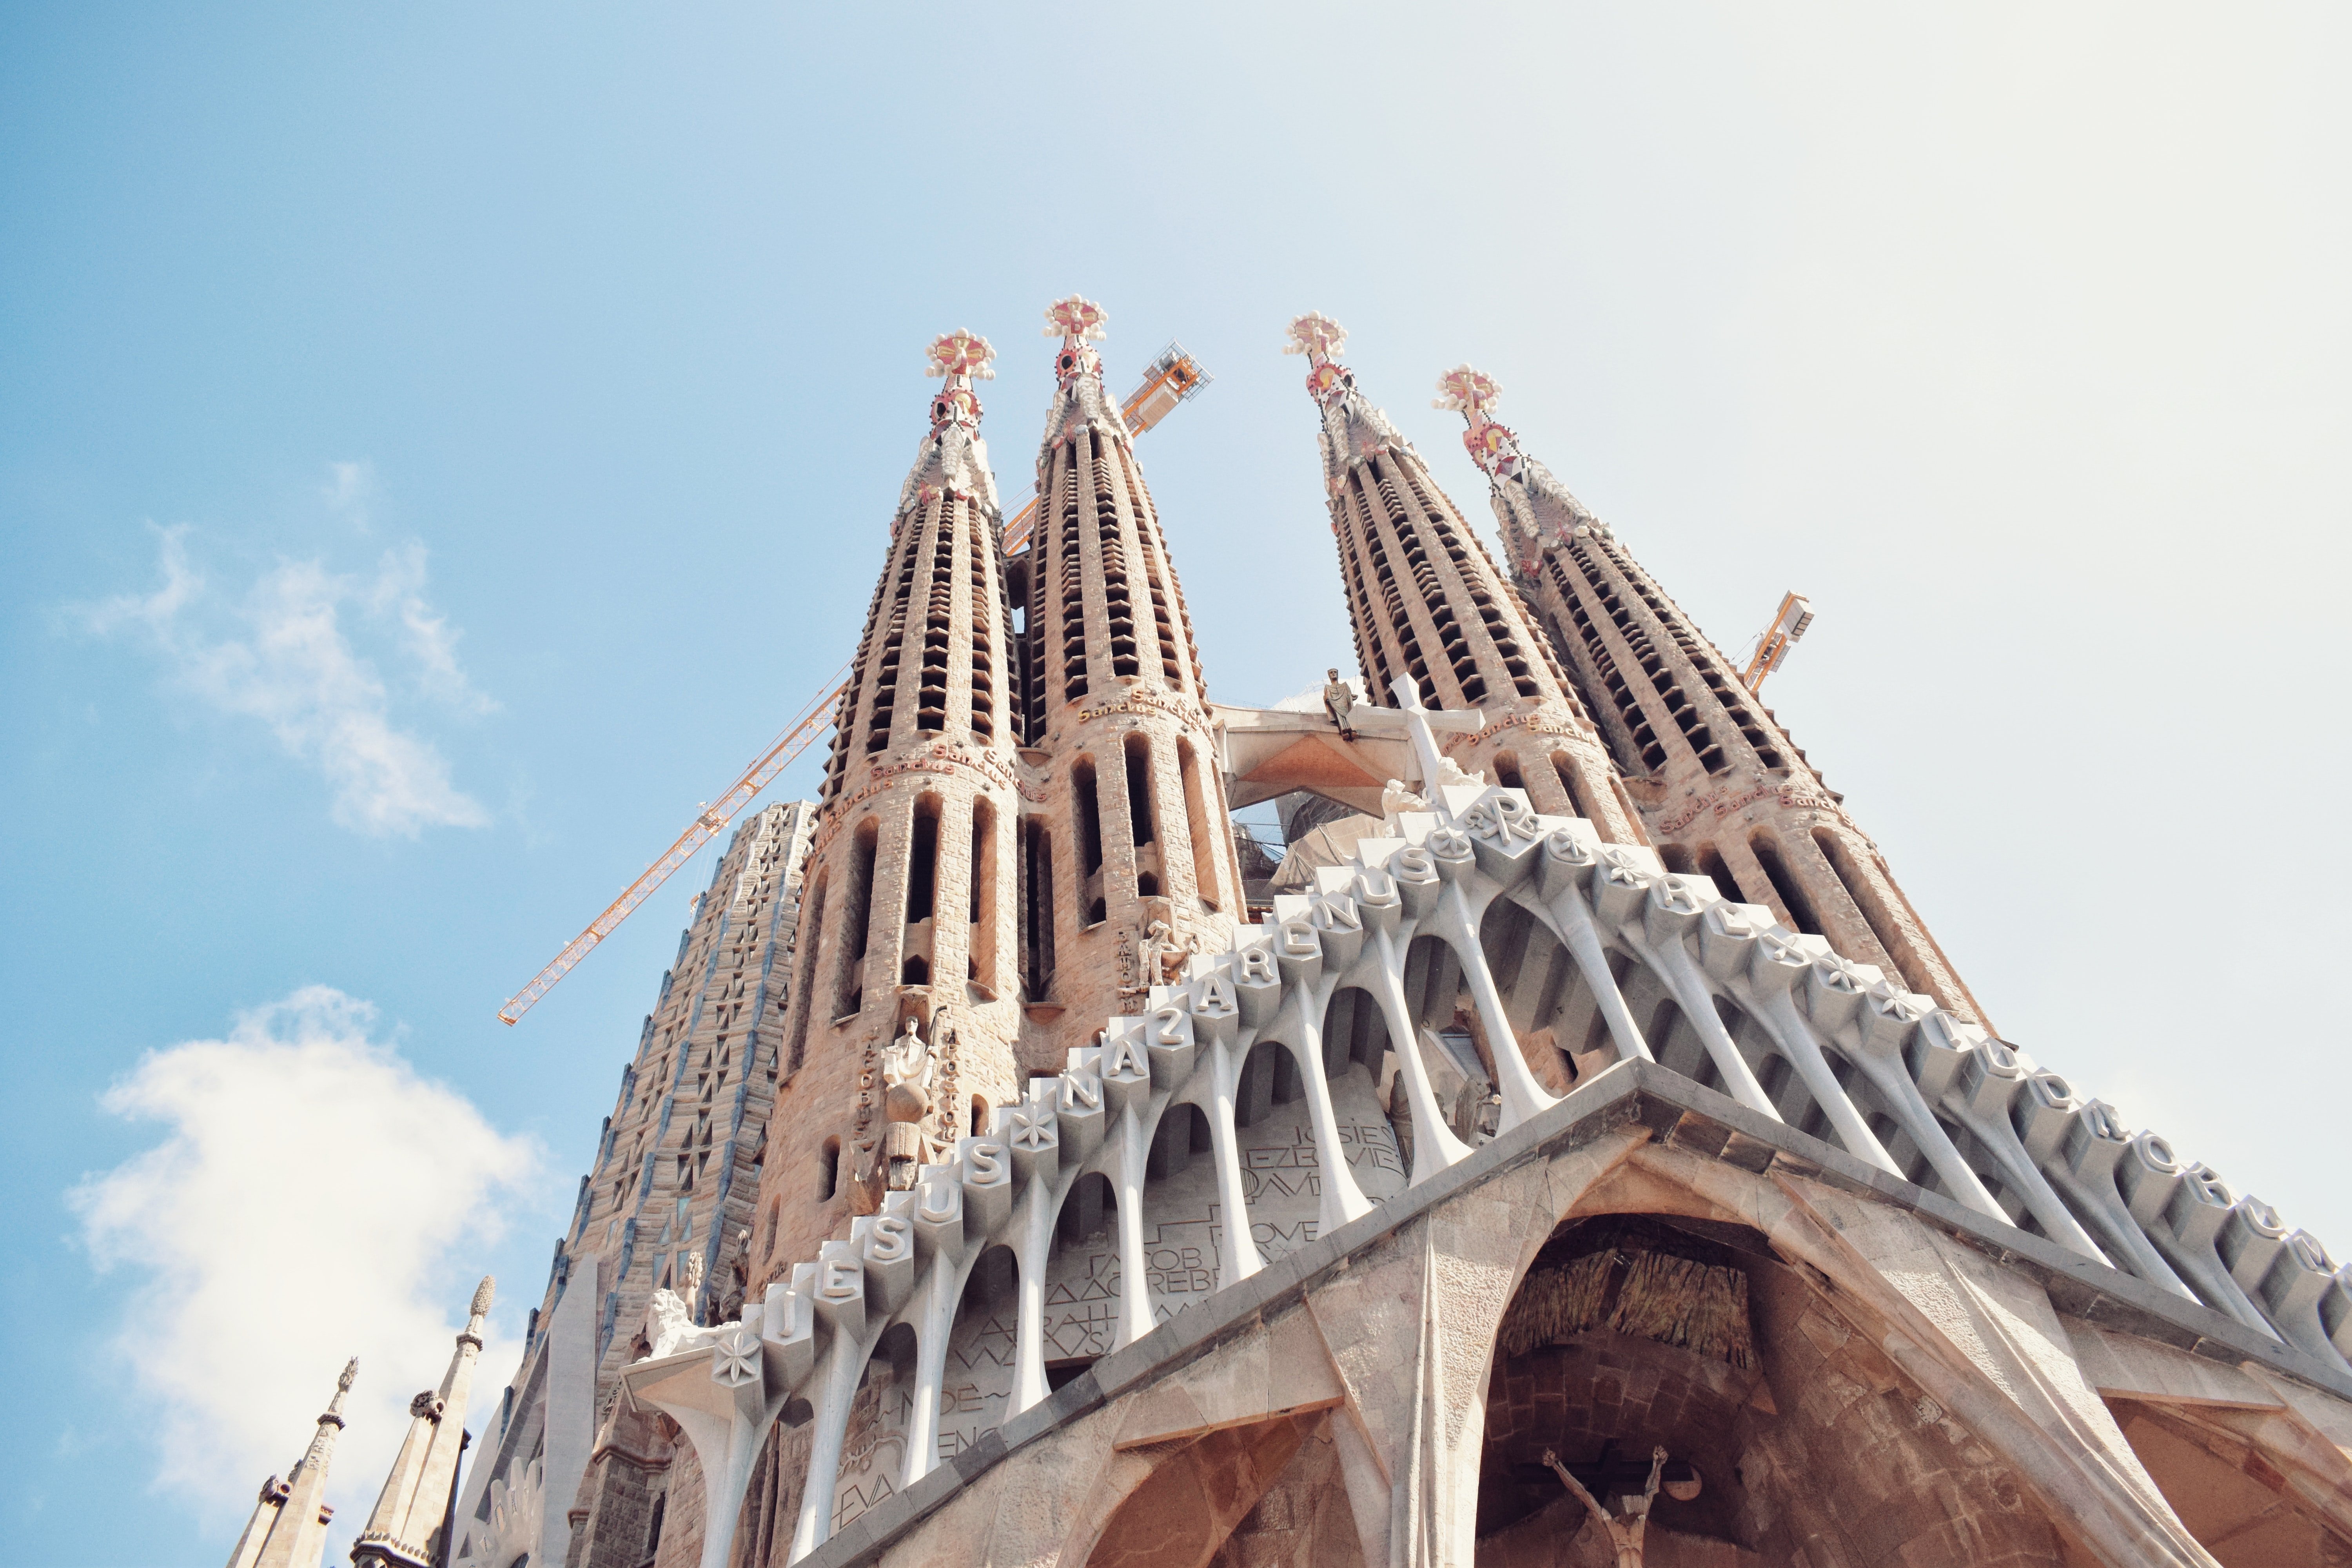 La Sagrada Família reprèn les obres: objectiu, acabar la torre de la Mare de Déu